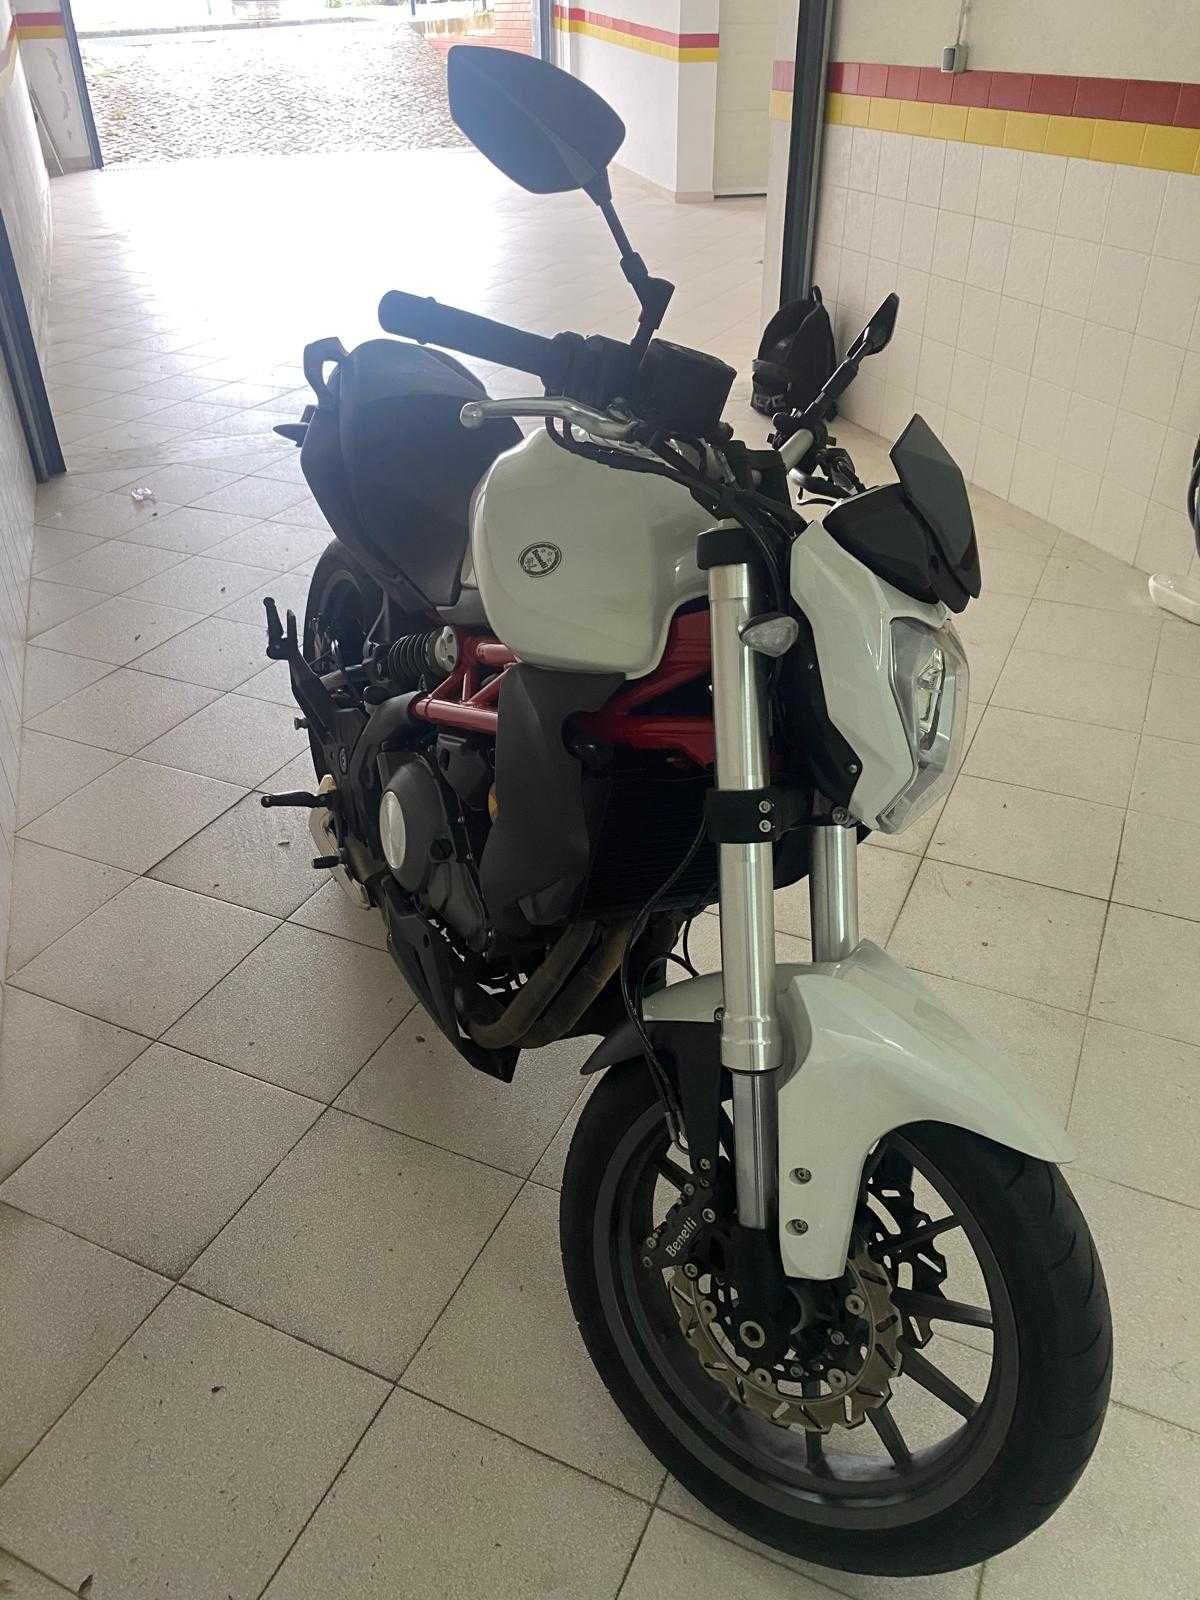 Benelli BN 302 ABS - Moto de garagem como nova